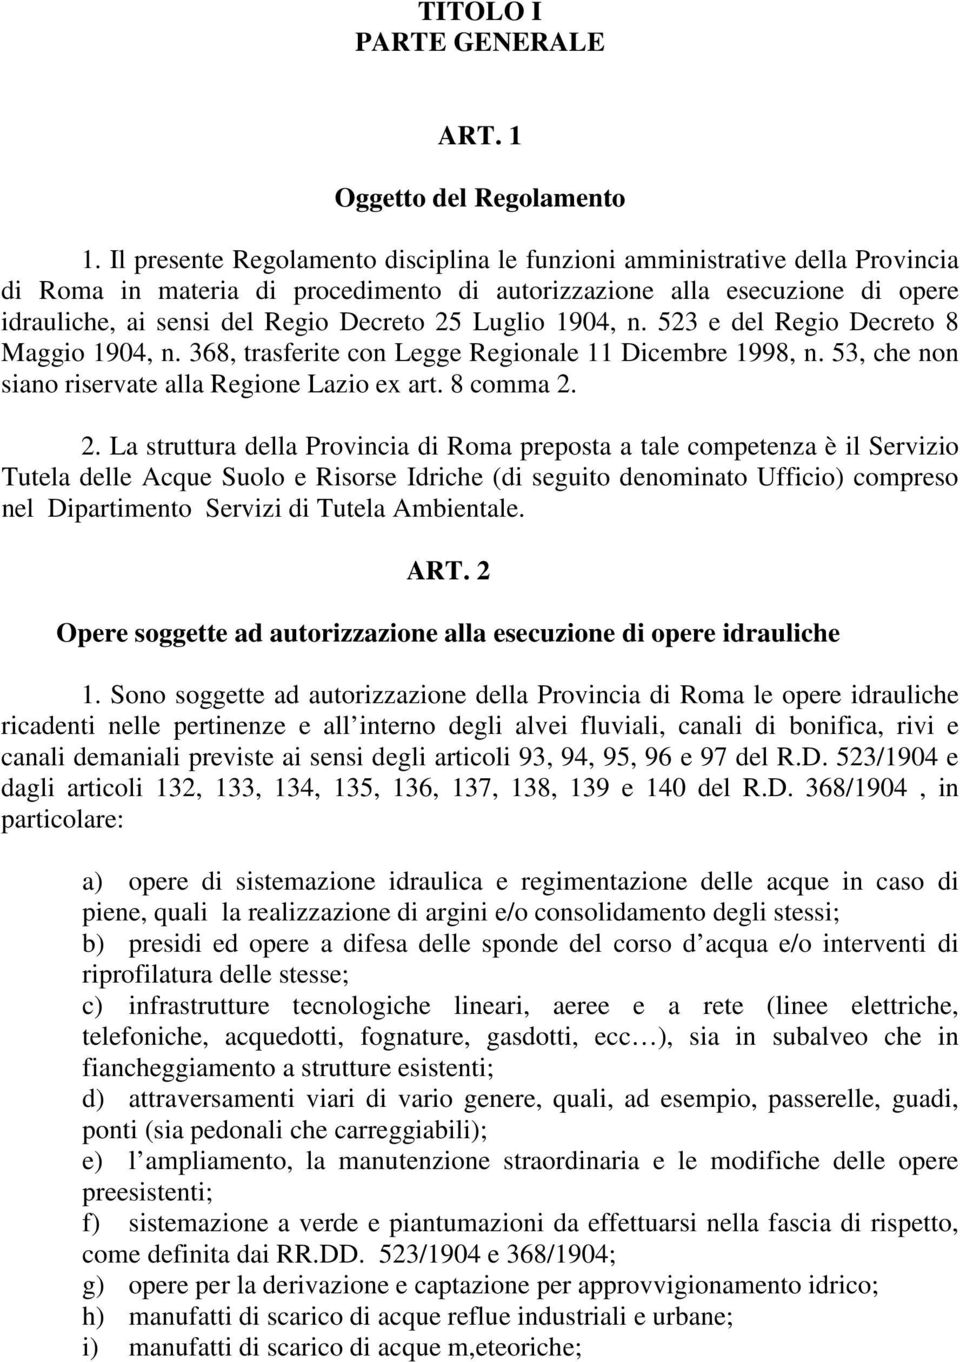 Luglio 1904, n. 523 e del Regio Decreto 8 Maggio 1904, n. 368, trasferite con Legge Regionale 11 Dicembre 1998, n. 53, che non siano riservate alla Regione Lazio ex art. 8 comma 2.